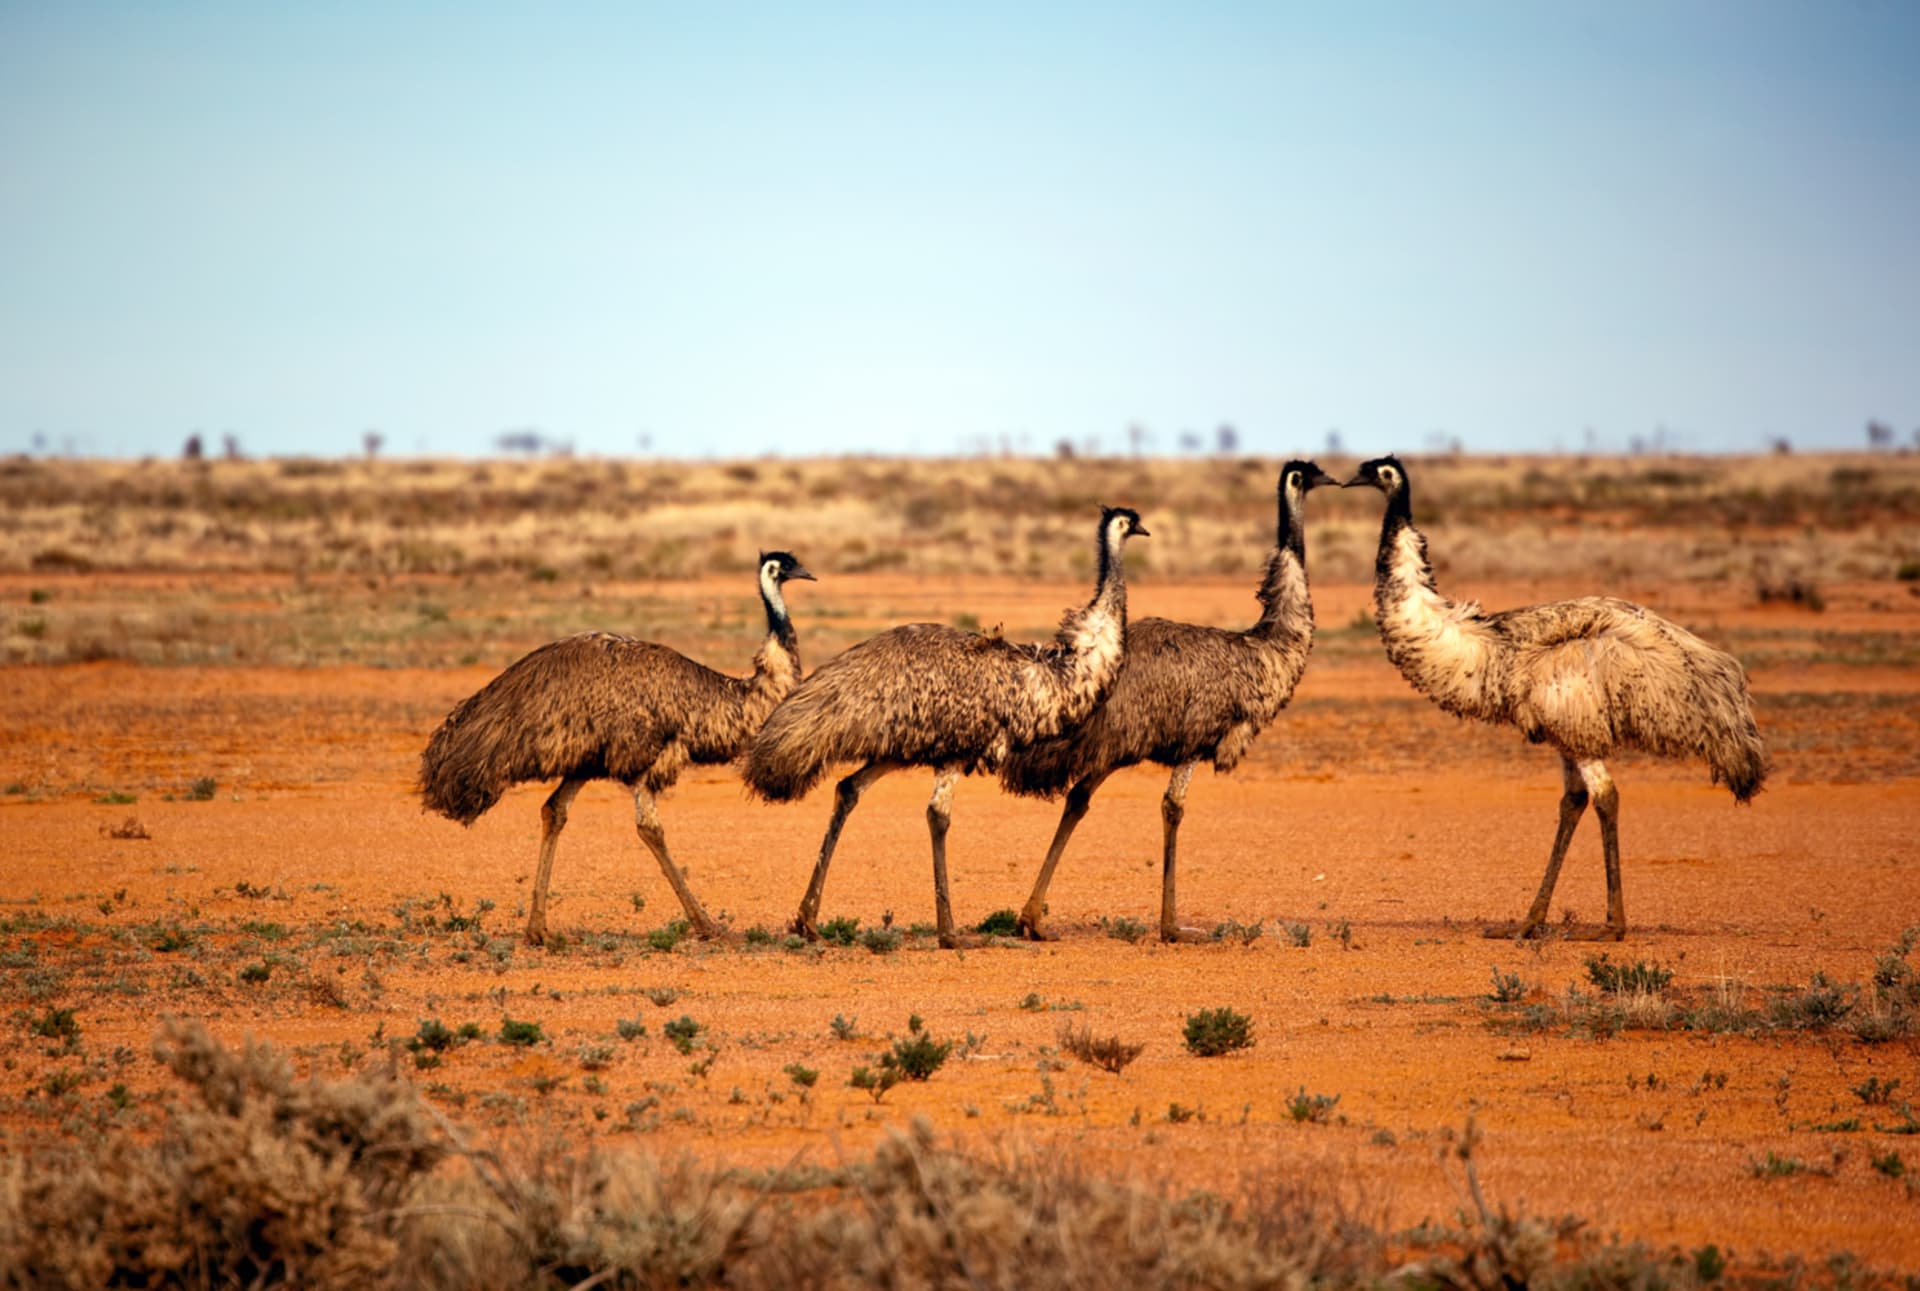 Emuů hnědýchv Austrálii žije okolo 600 tisíc